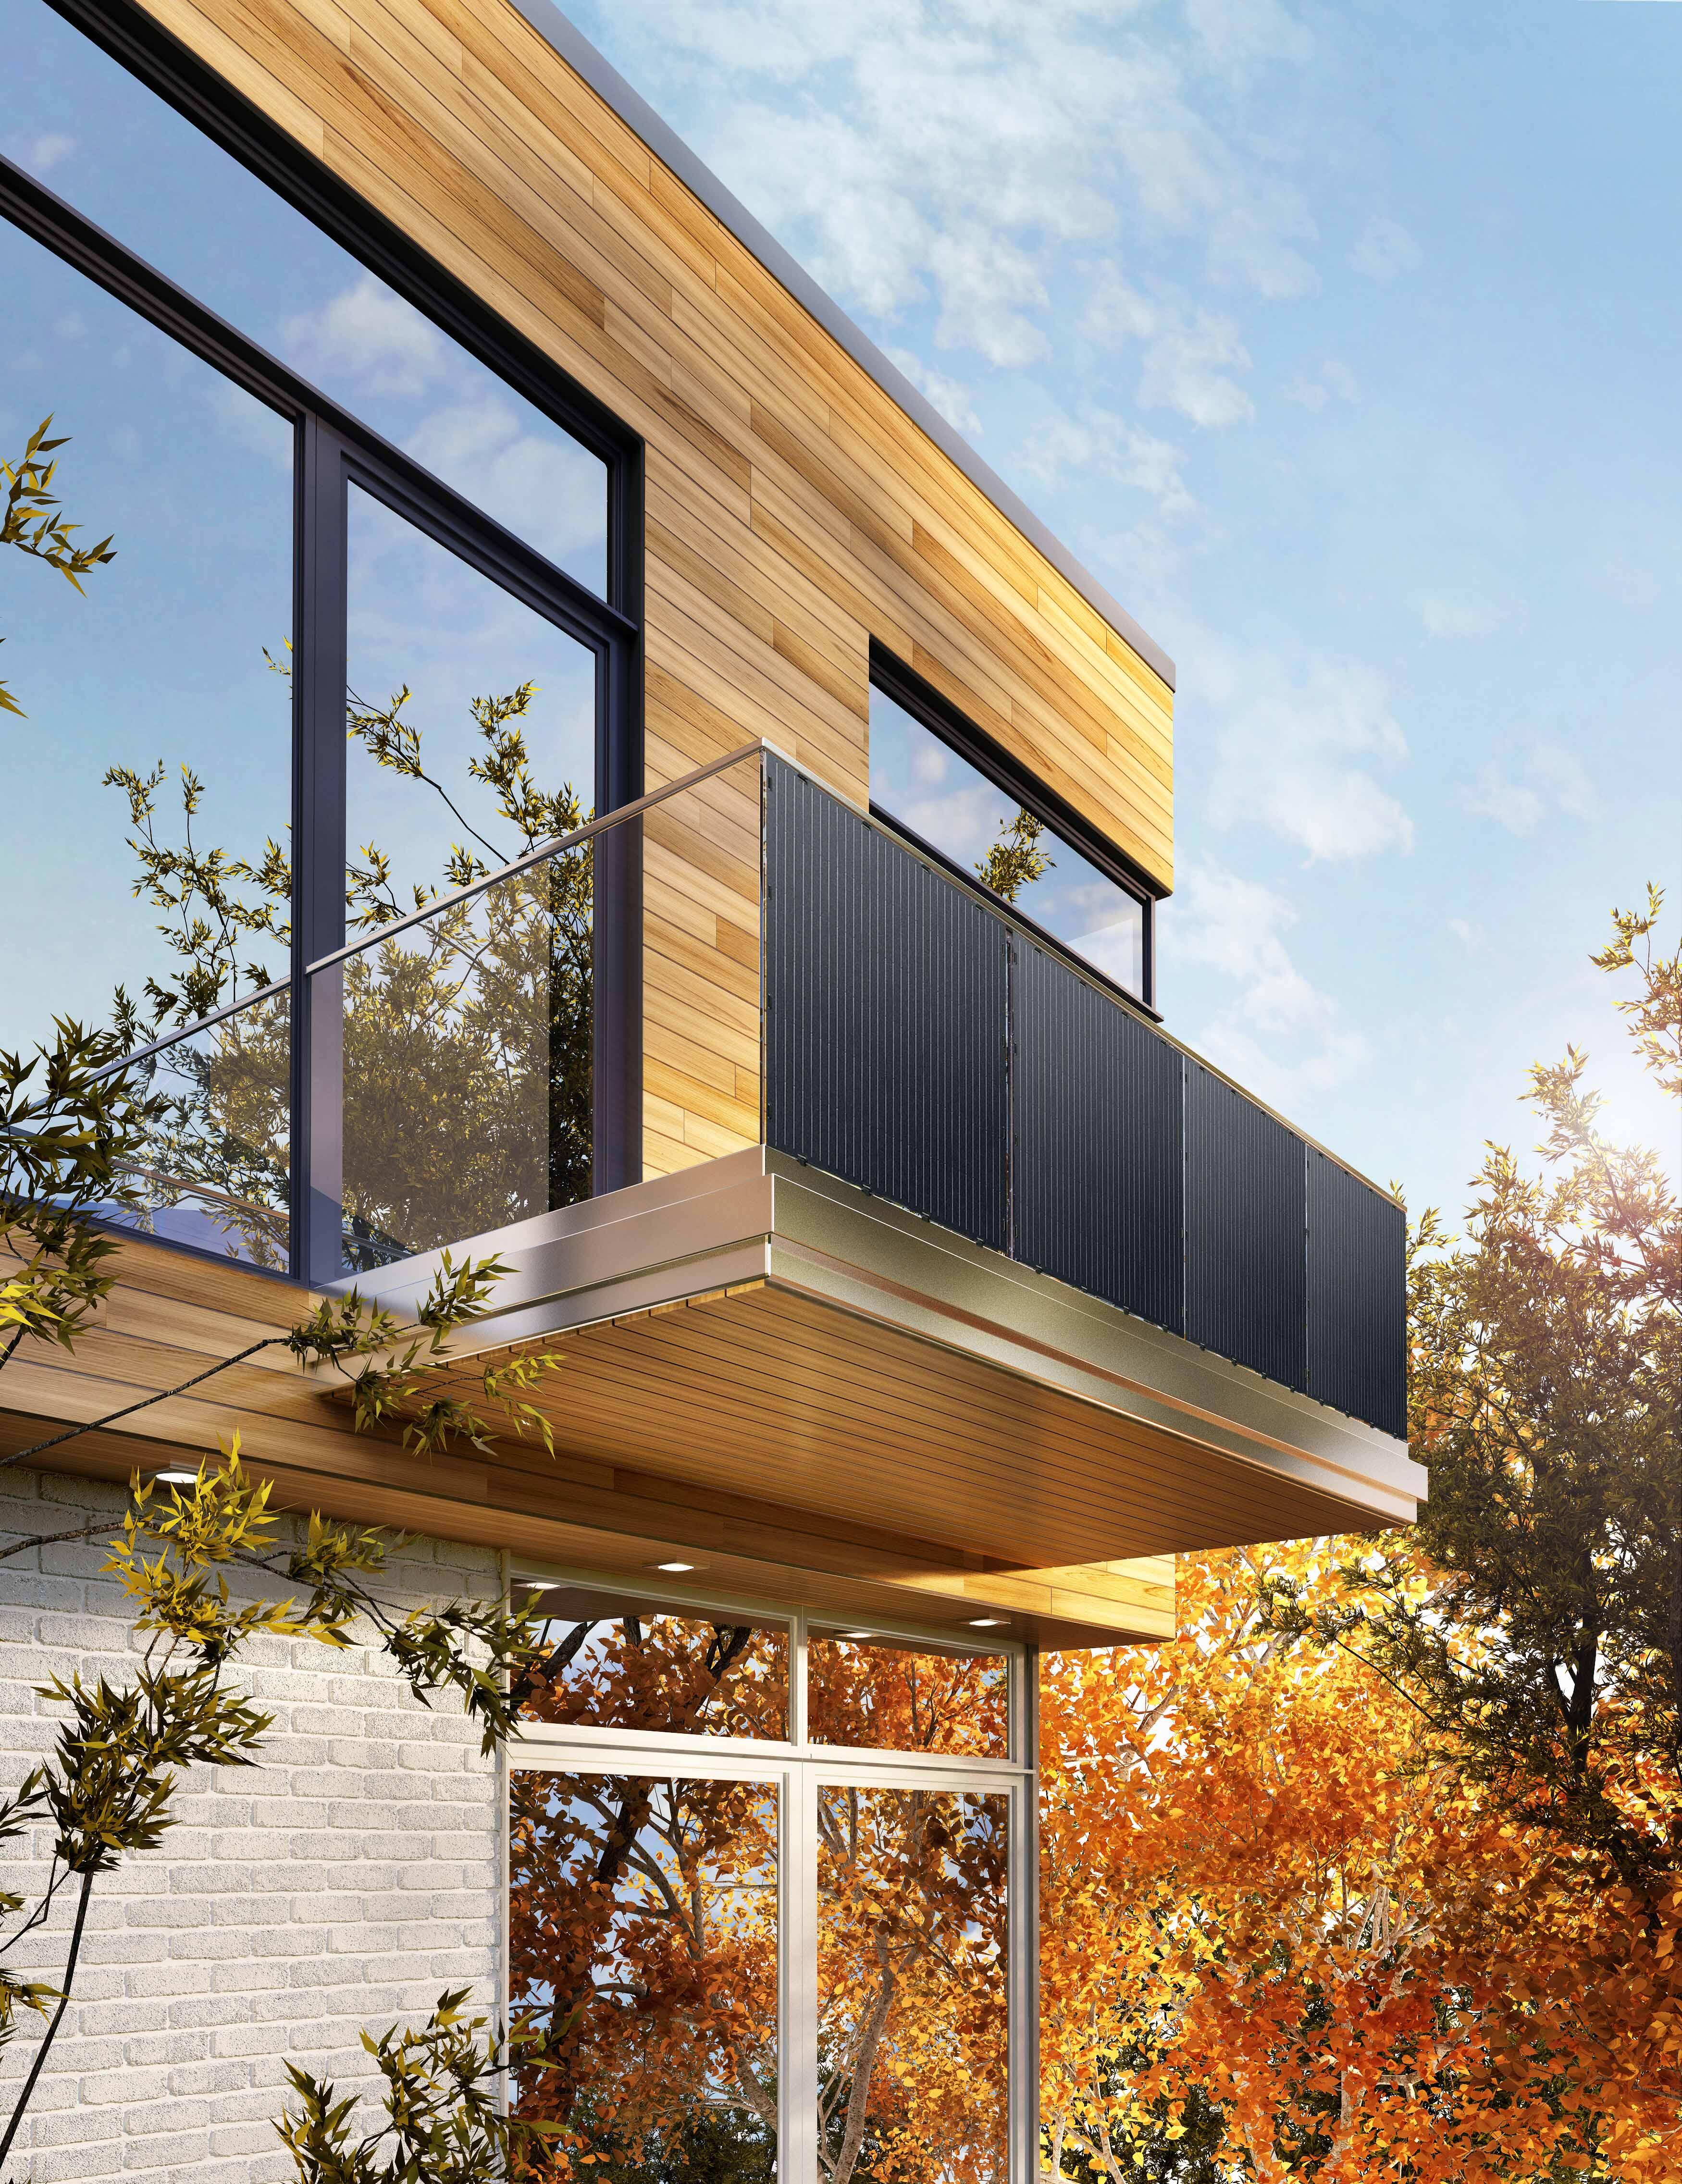 Enchufe solar para ventanas que genera electricidad – Ciudad